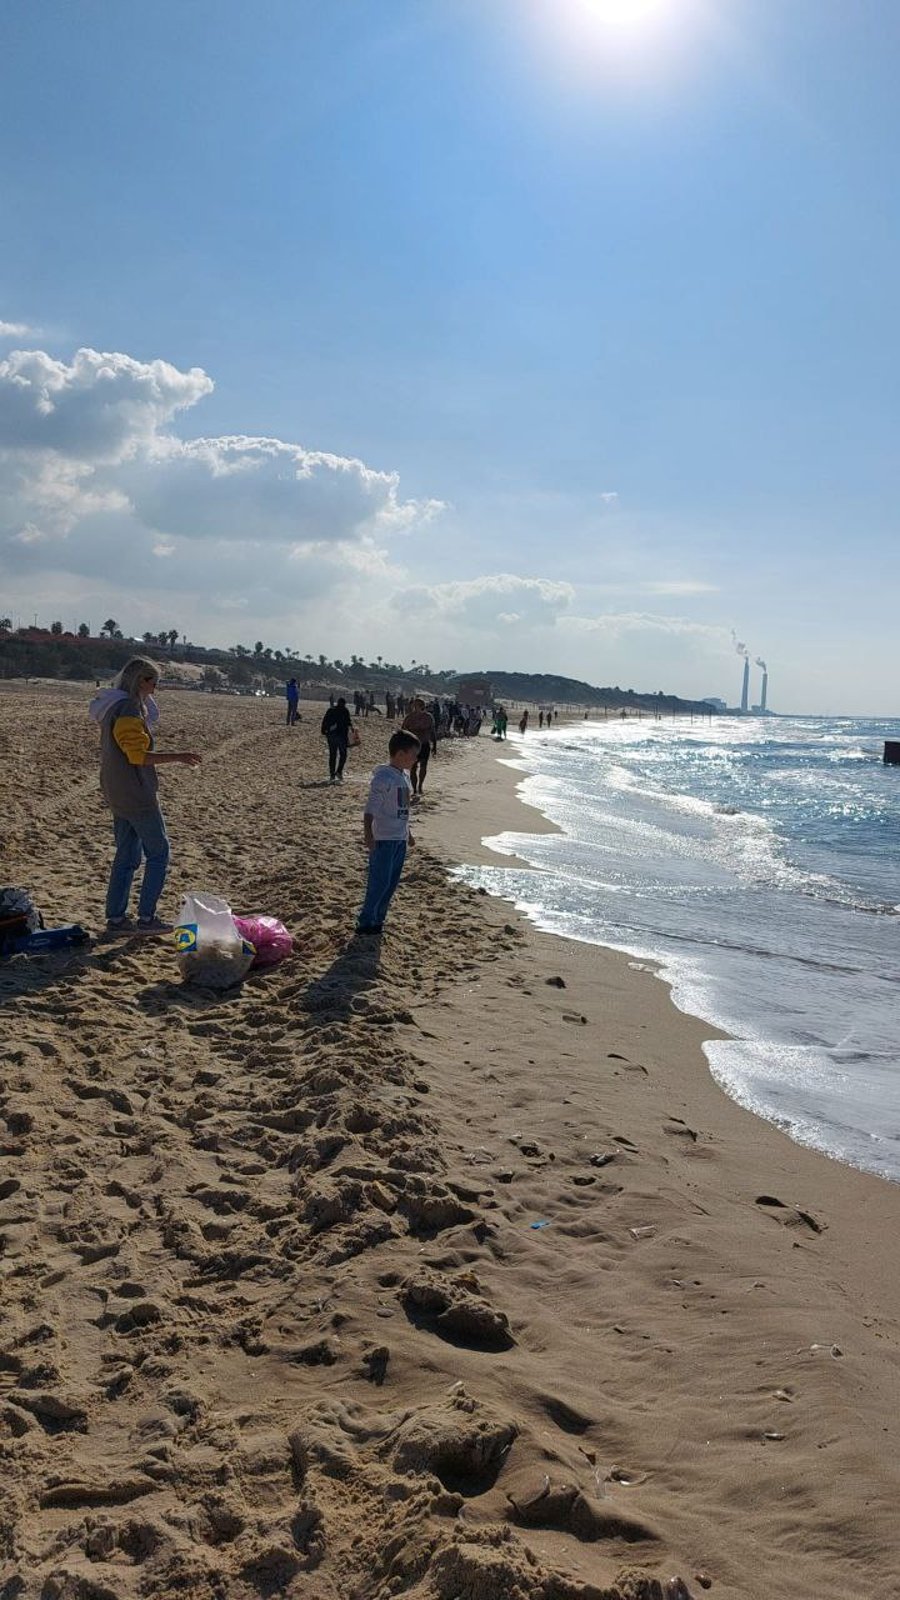 אחרי הביזה באשקלון • צפו בתלמידים מנקים את החוף